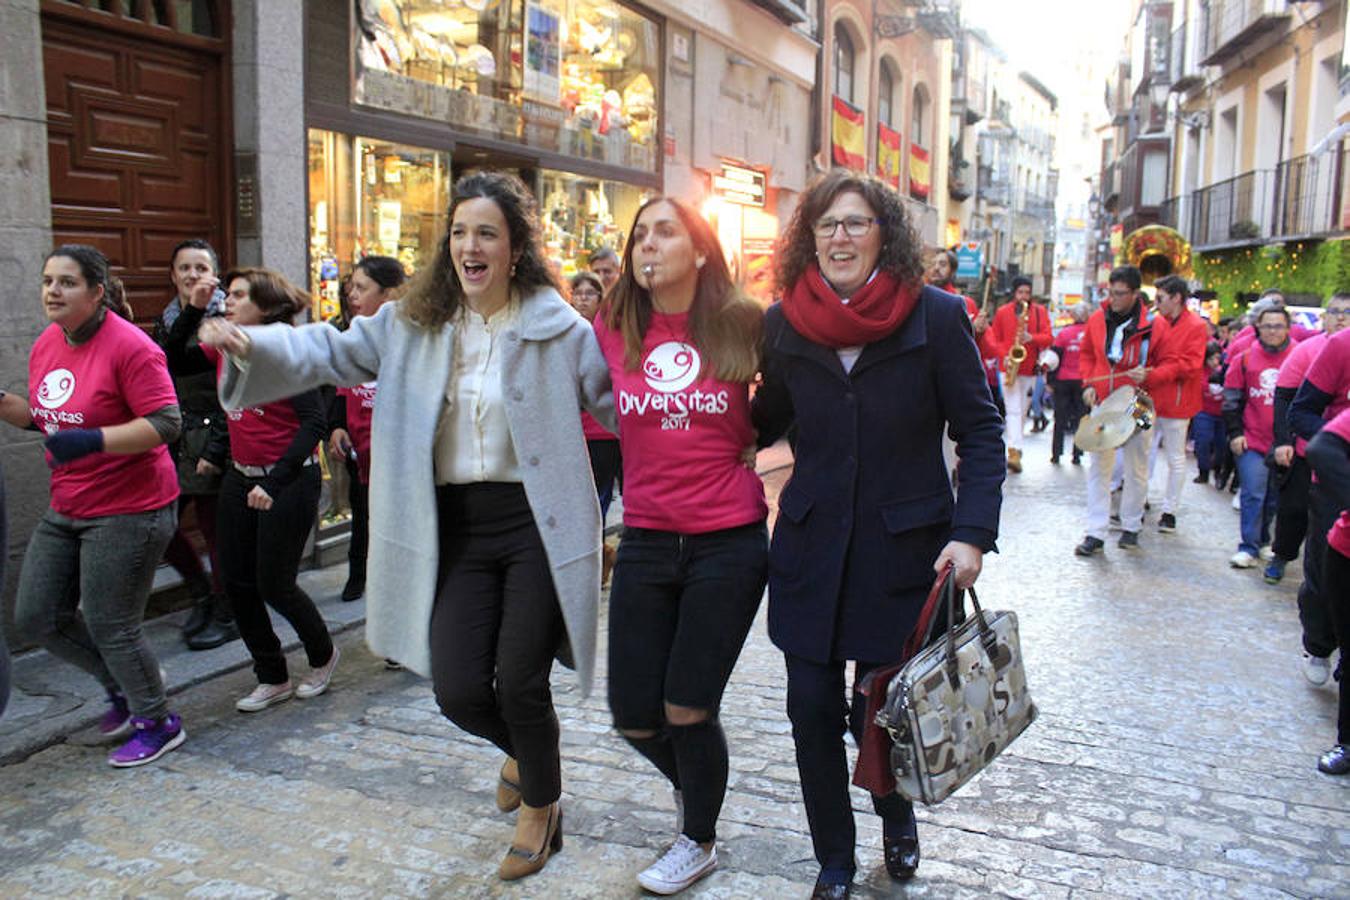 Diversitas la vuelve a liar en el casco histórico de Toledo